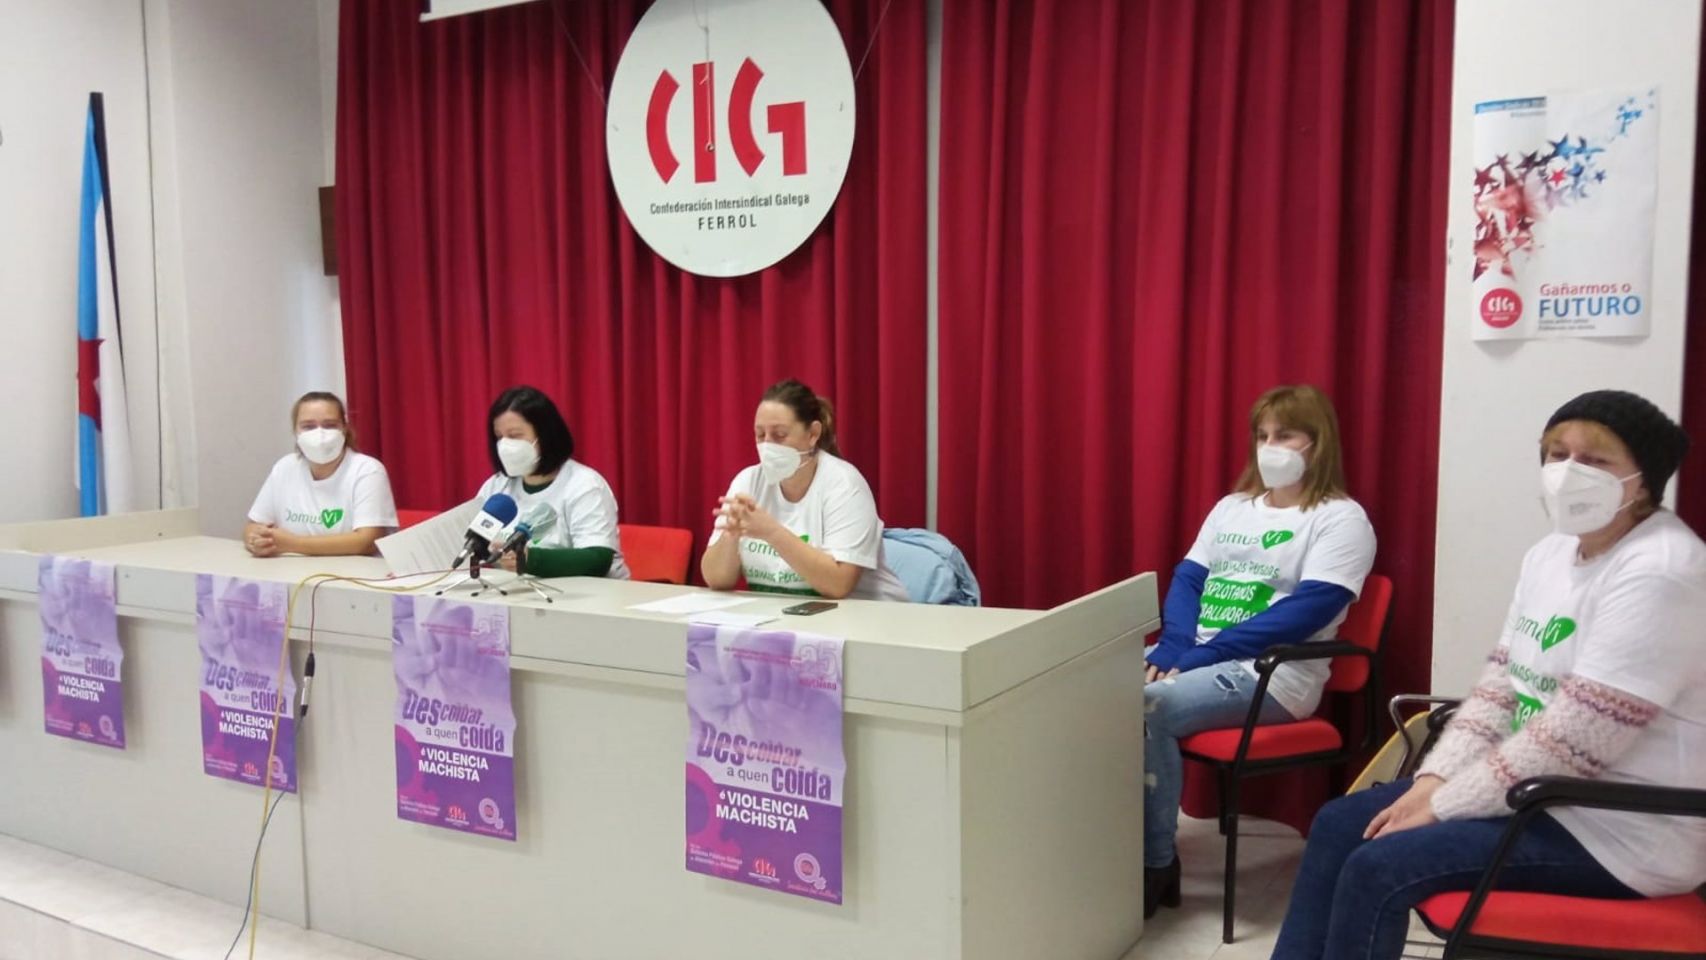 La CIG durante una rueda de prensa para denunciar la "precariedad laboral" en las Domusvi de Ferrolterra.